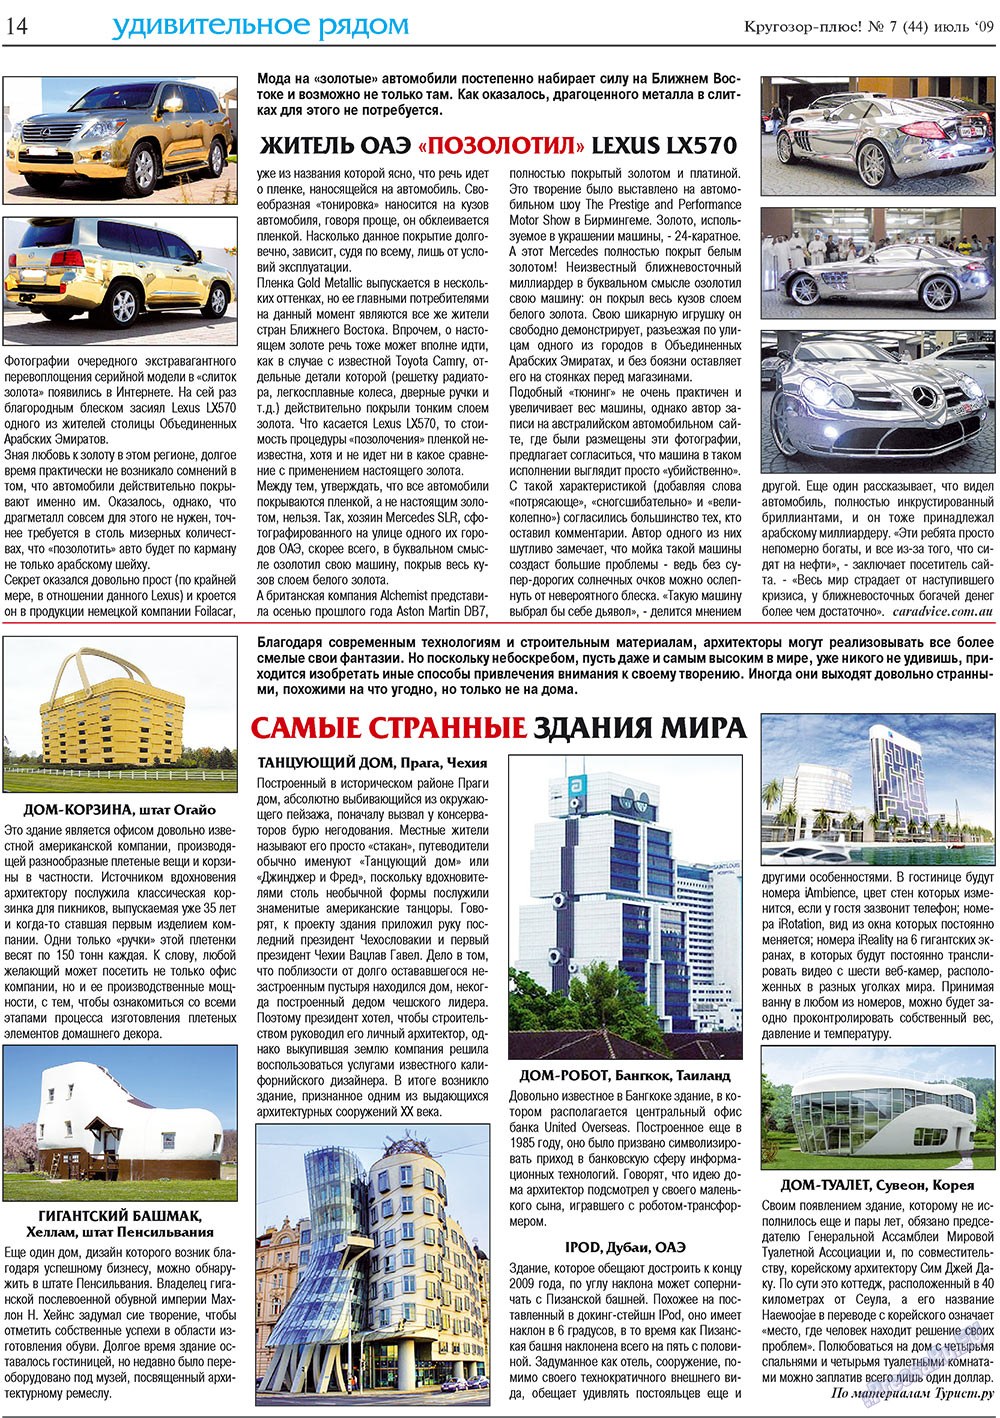 Кругозор плюс!, газета. 2009 №7 стр.14